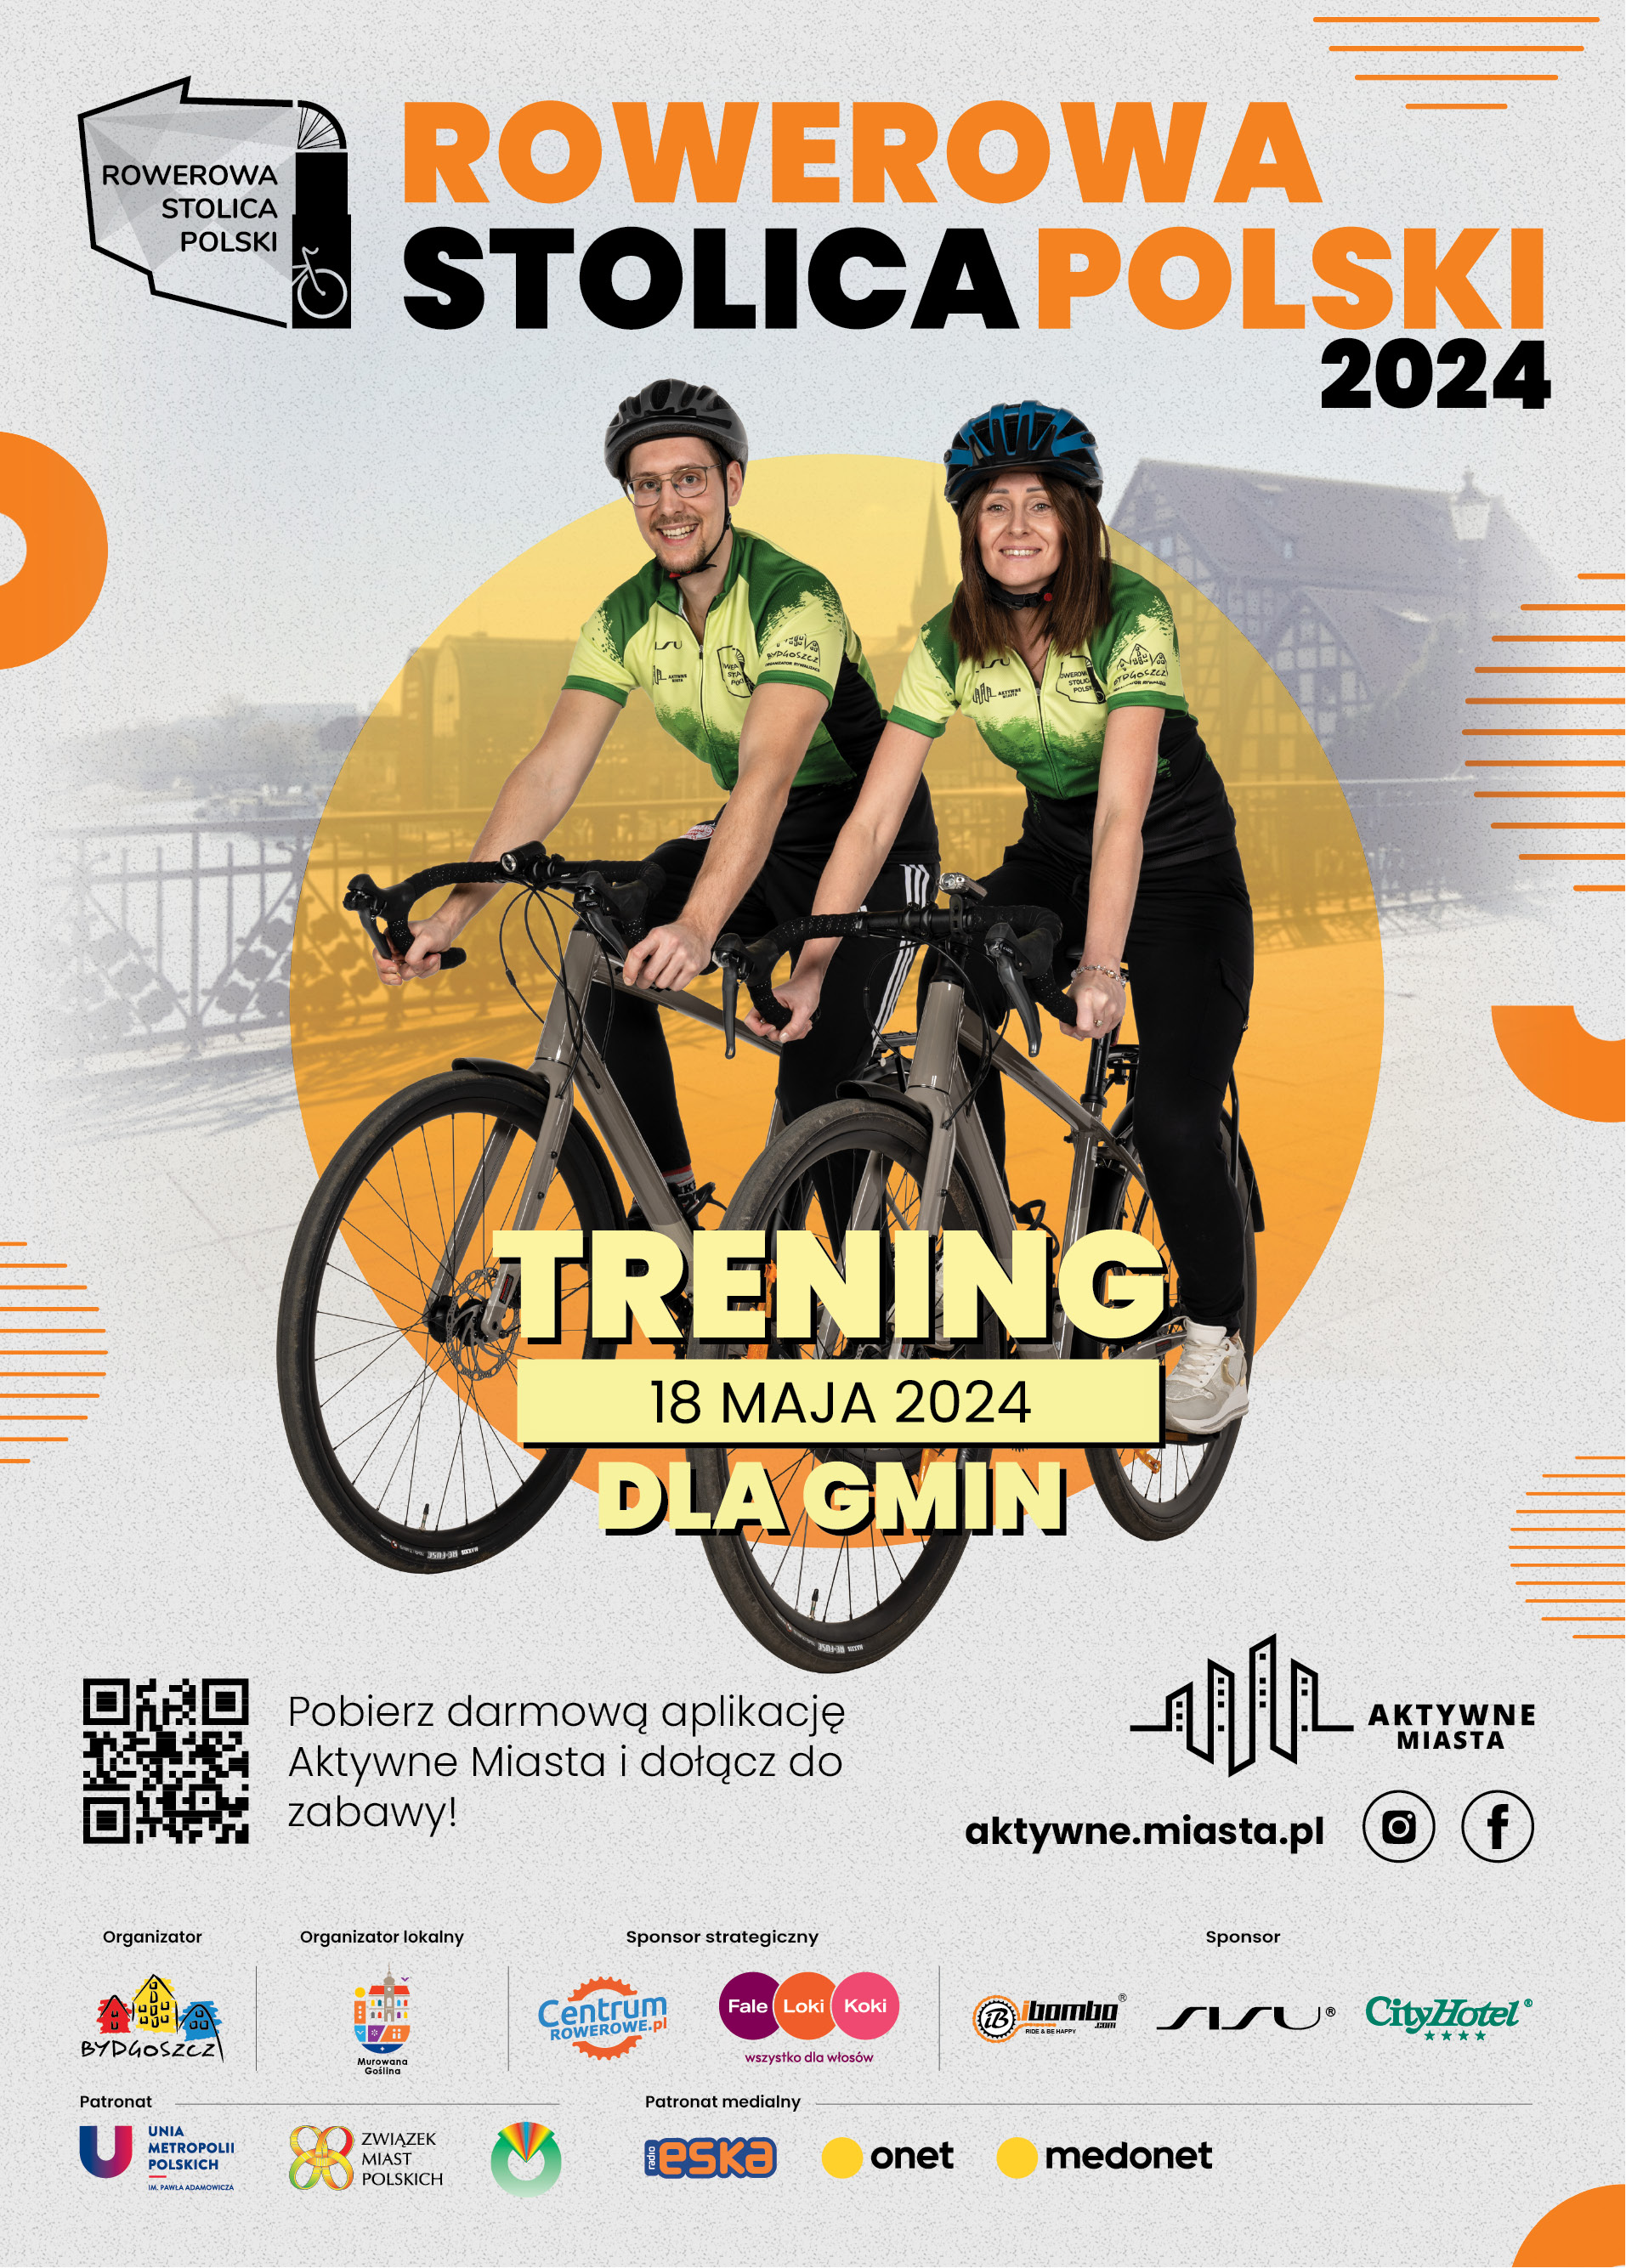 dwóch rowerzystów na rowerach, napis trening dla gmin, Rowerowa Stolica Polski, 18 maja